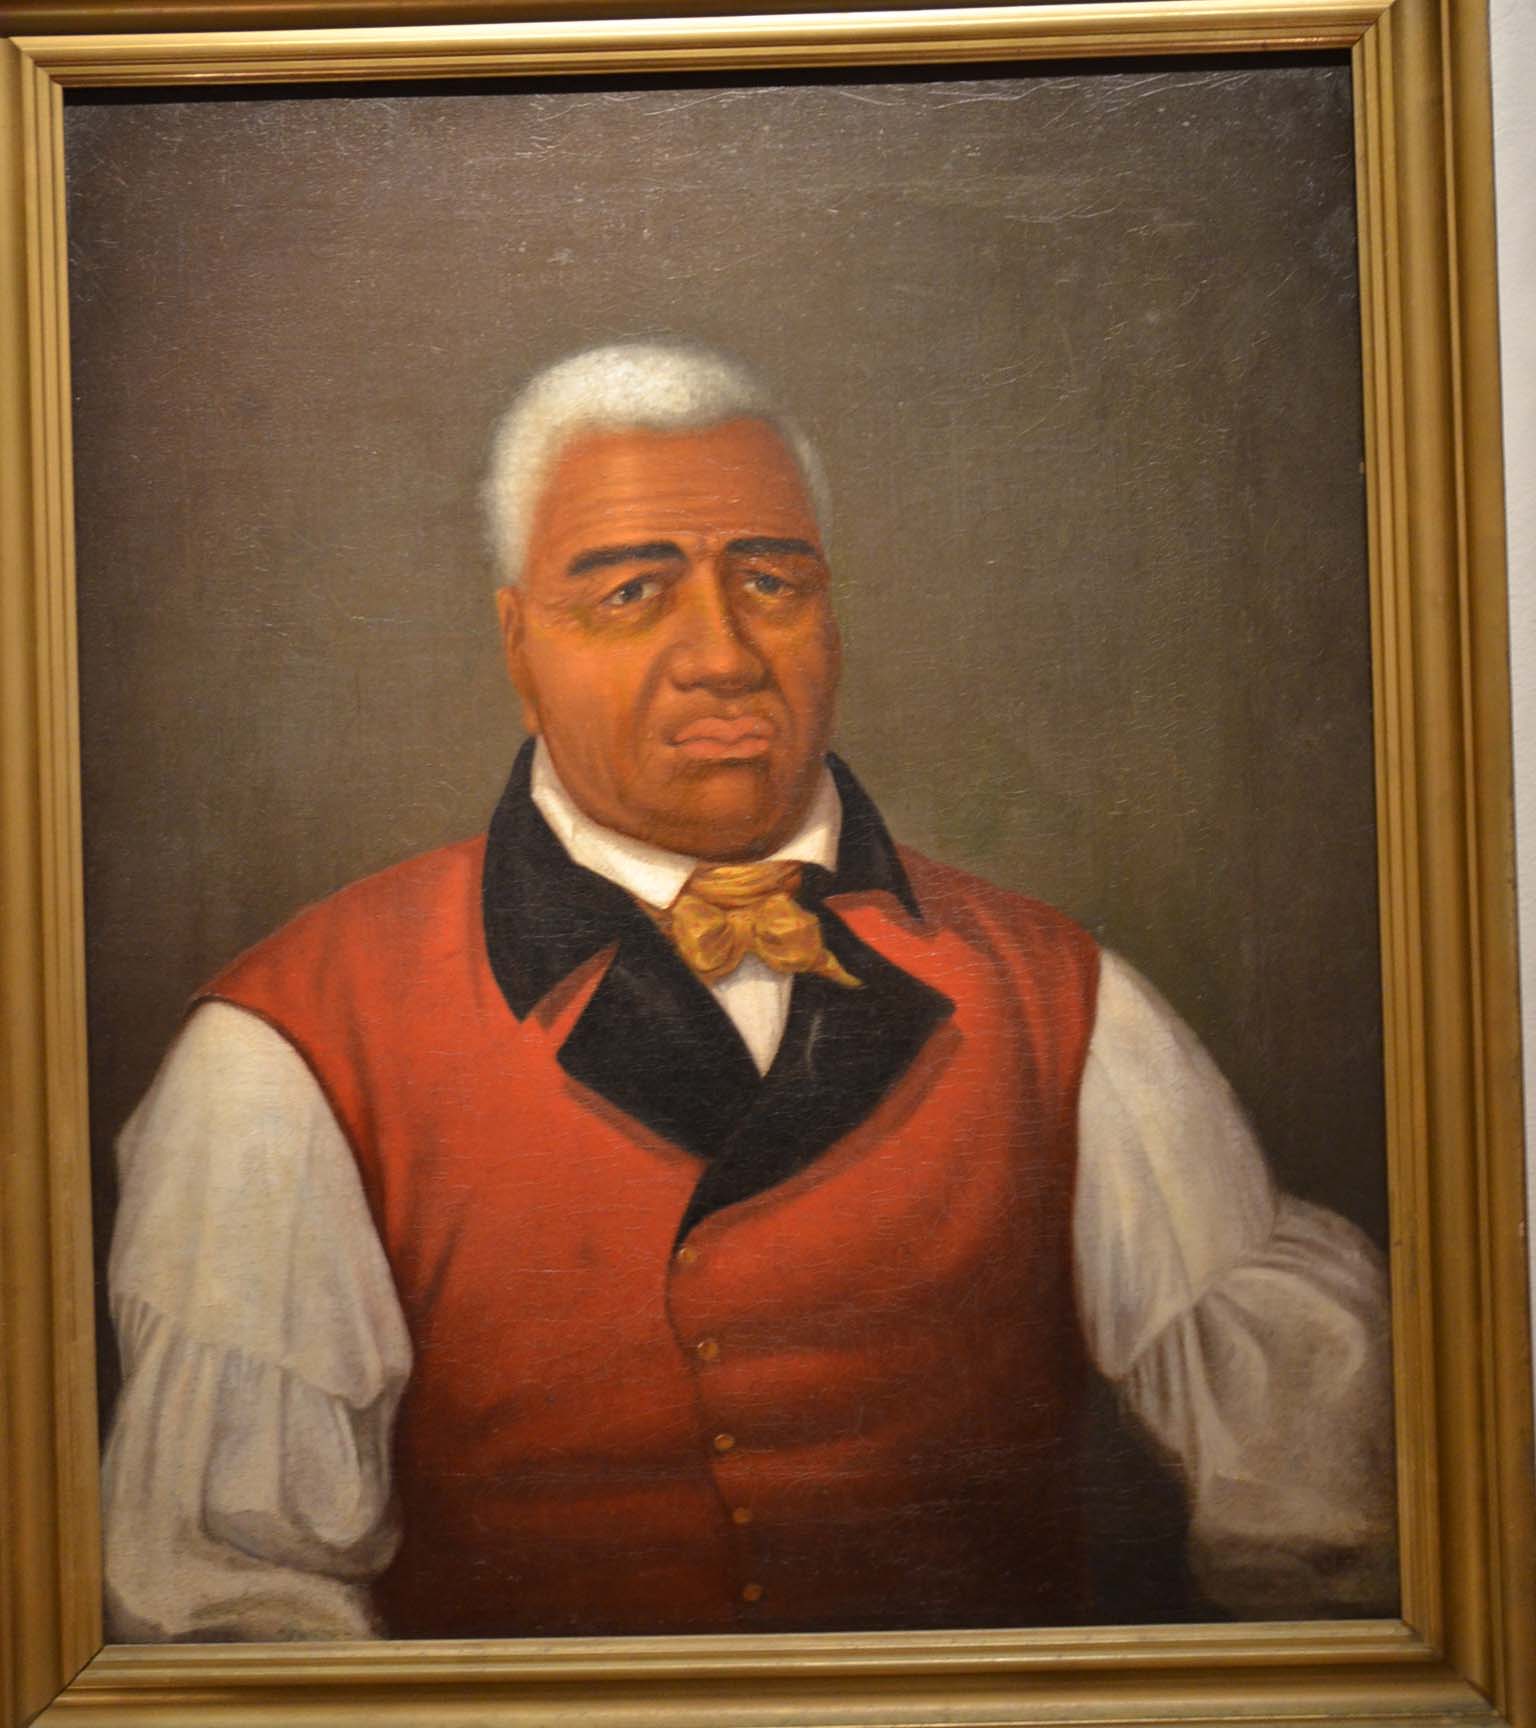 Portrait of King Kamehameha I